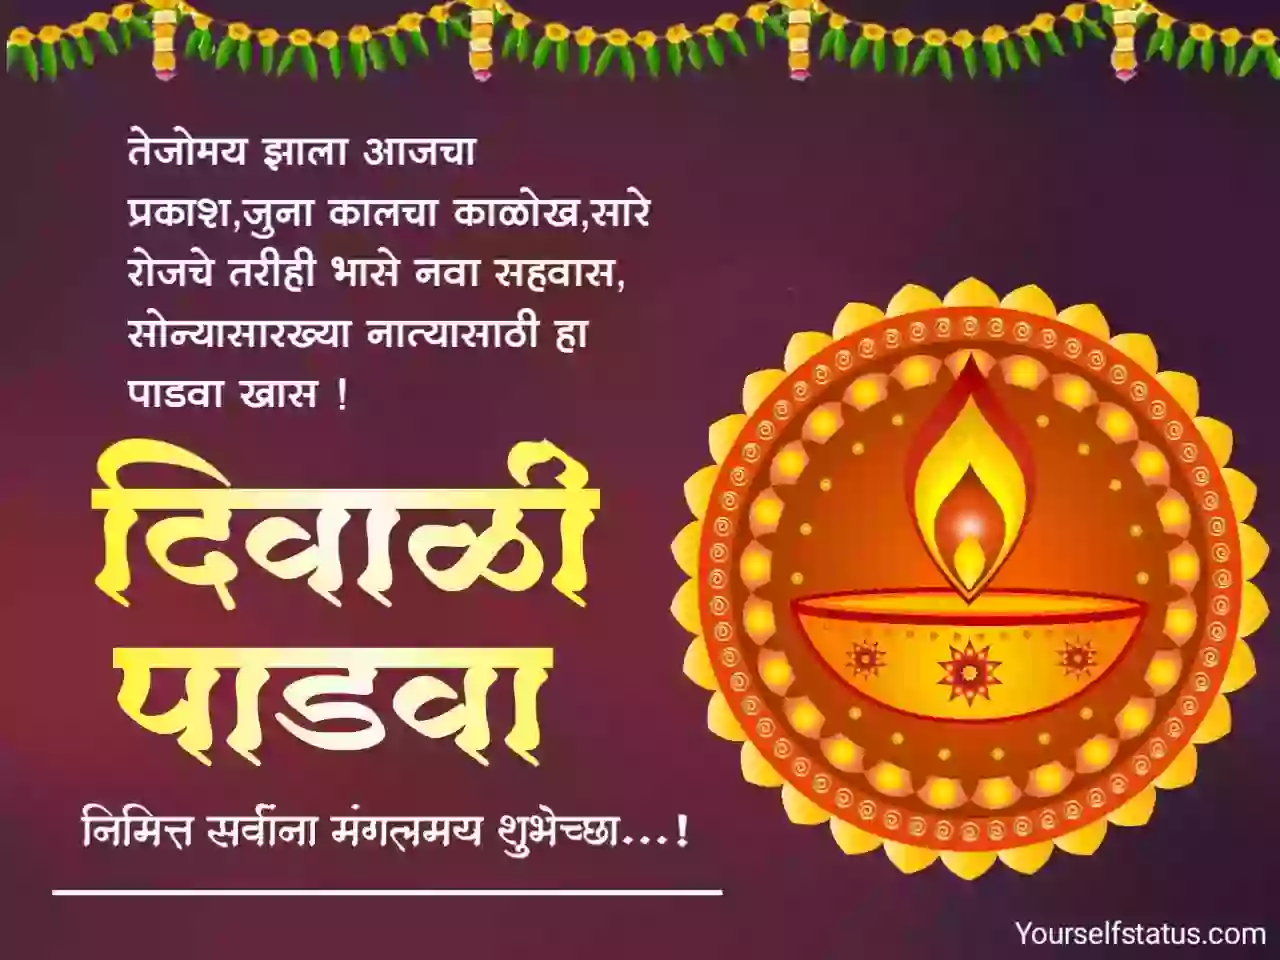 Diwali padwa wishes in marathi